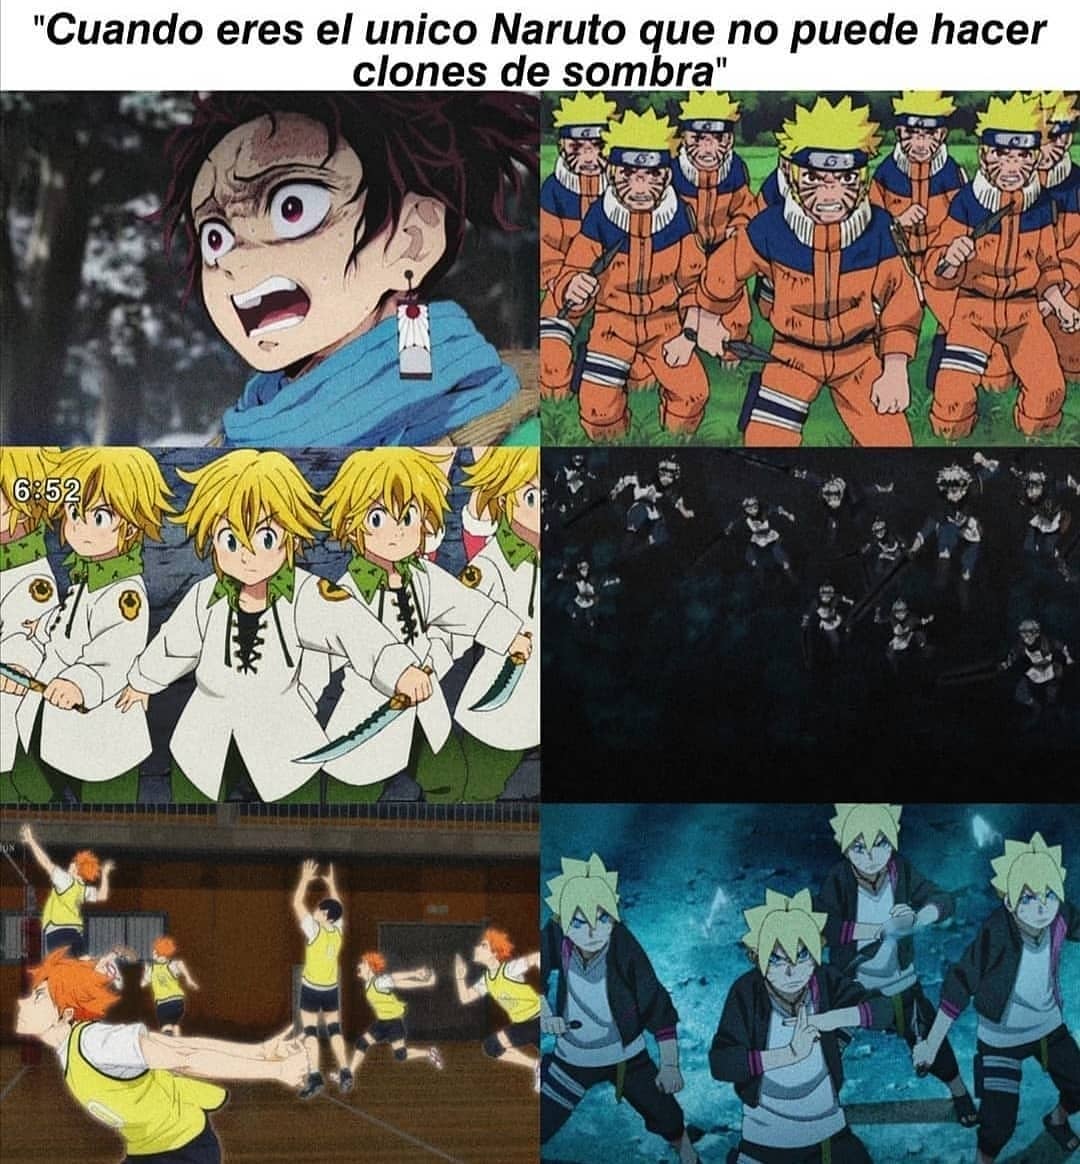 Cuando eres el único Naruto que no puede hacer clones de sombra.